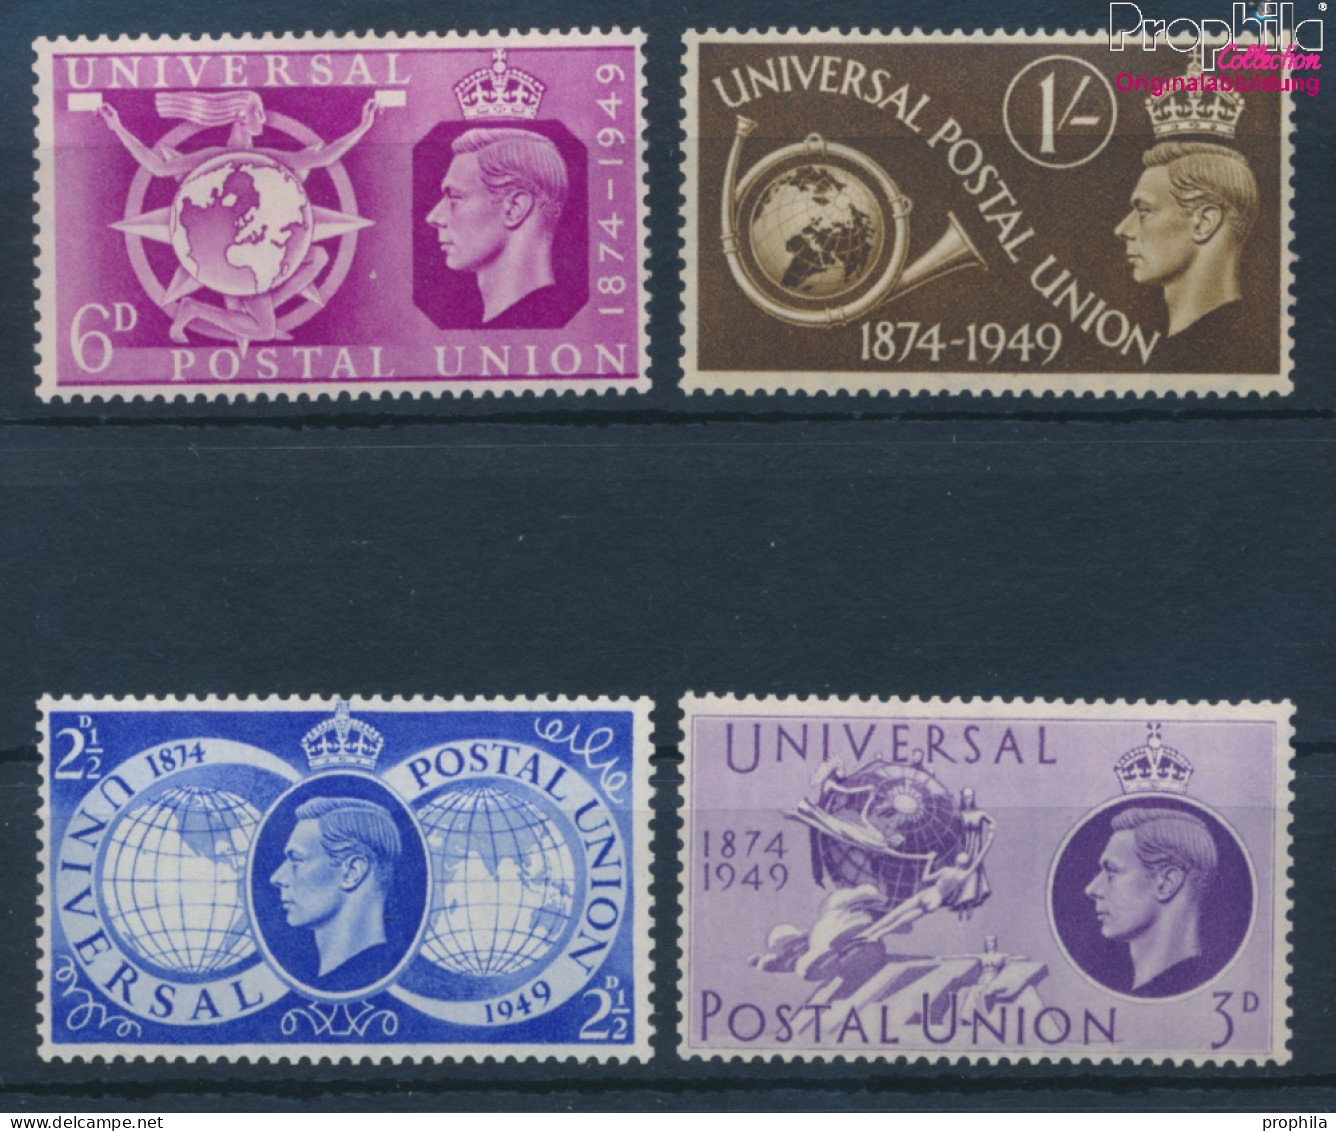 Großbritannien 241-244 (kompl.Ausg.) Postfrisch 1949 75 Jahre UPU (10398203 - Nuevos